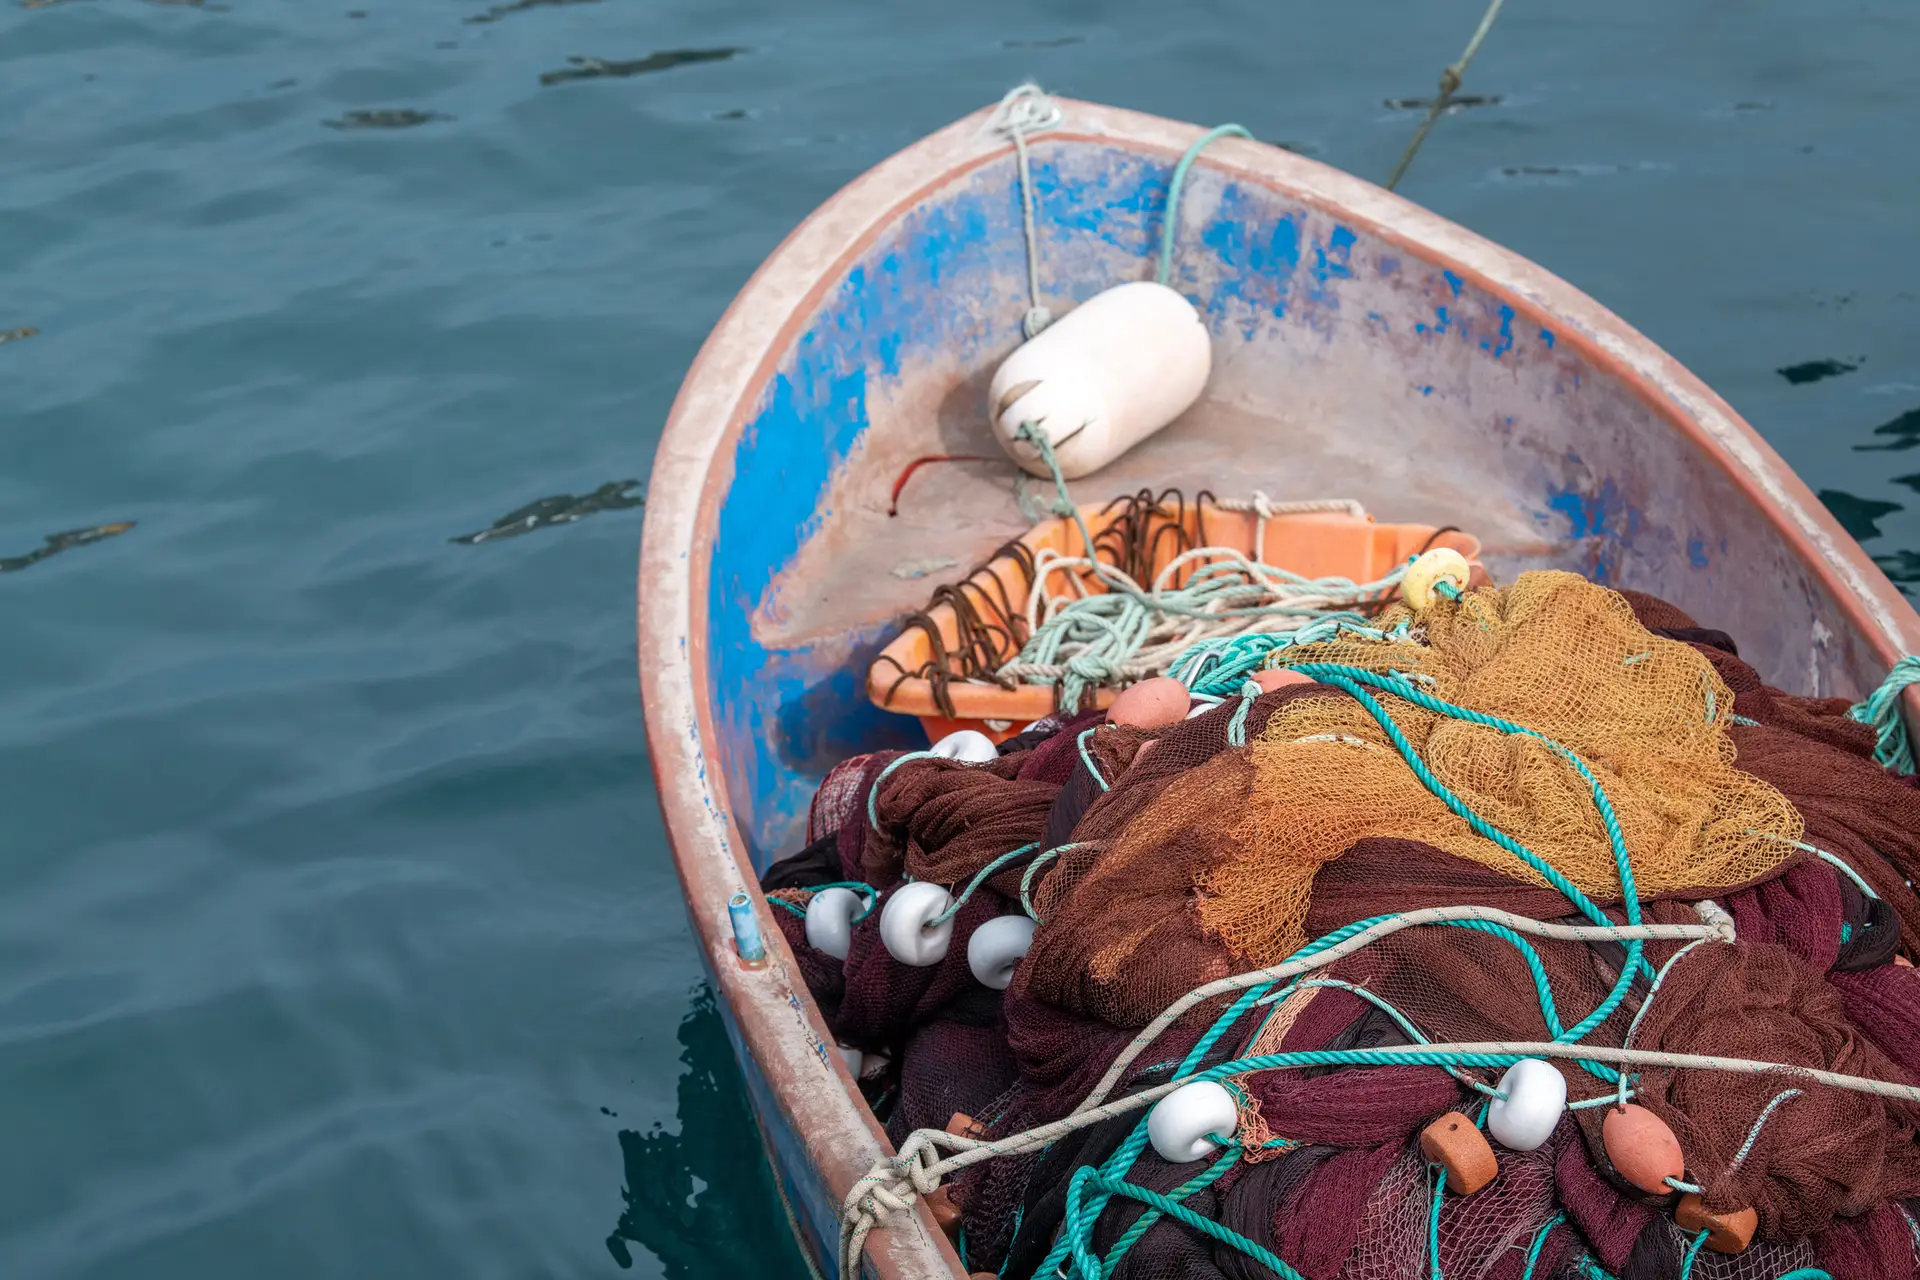 Tribunal irlandês vai apurar circunstâncias da morte de pescador português no país